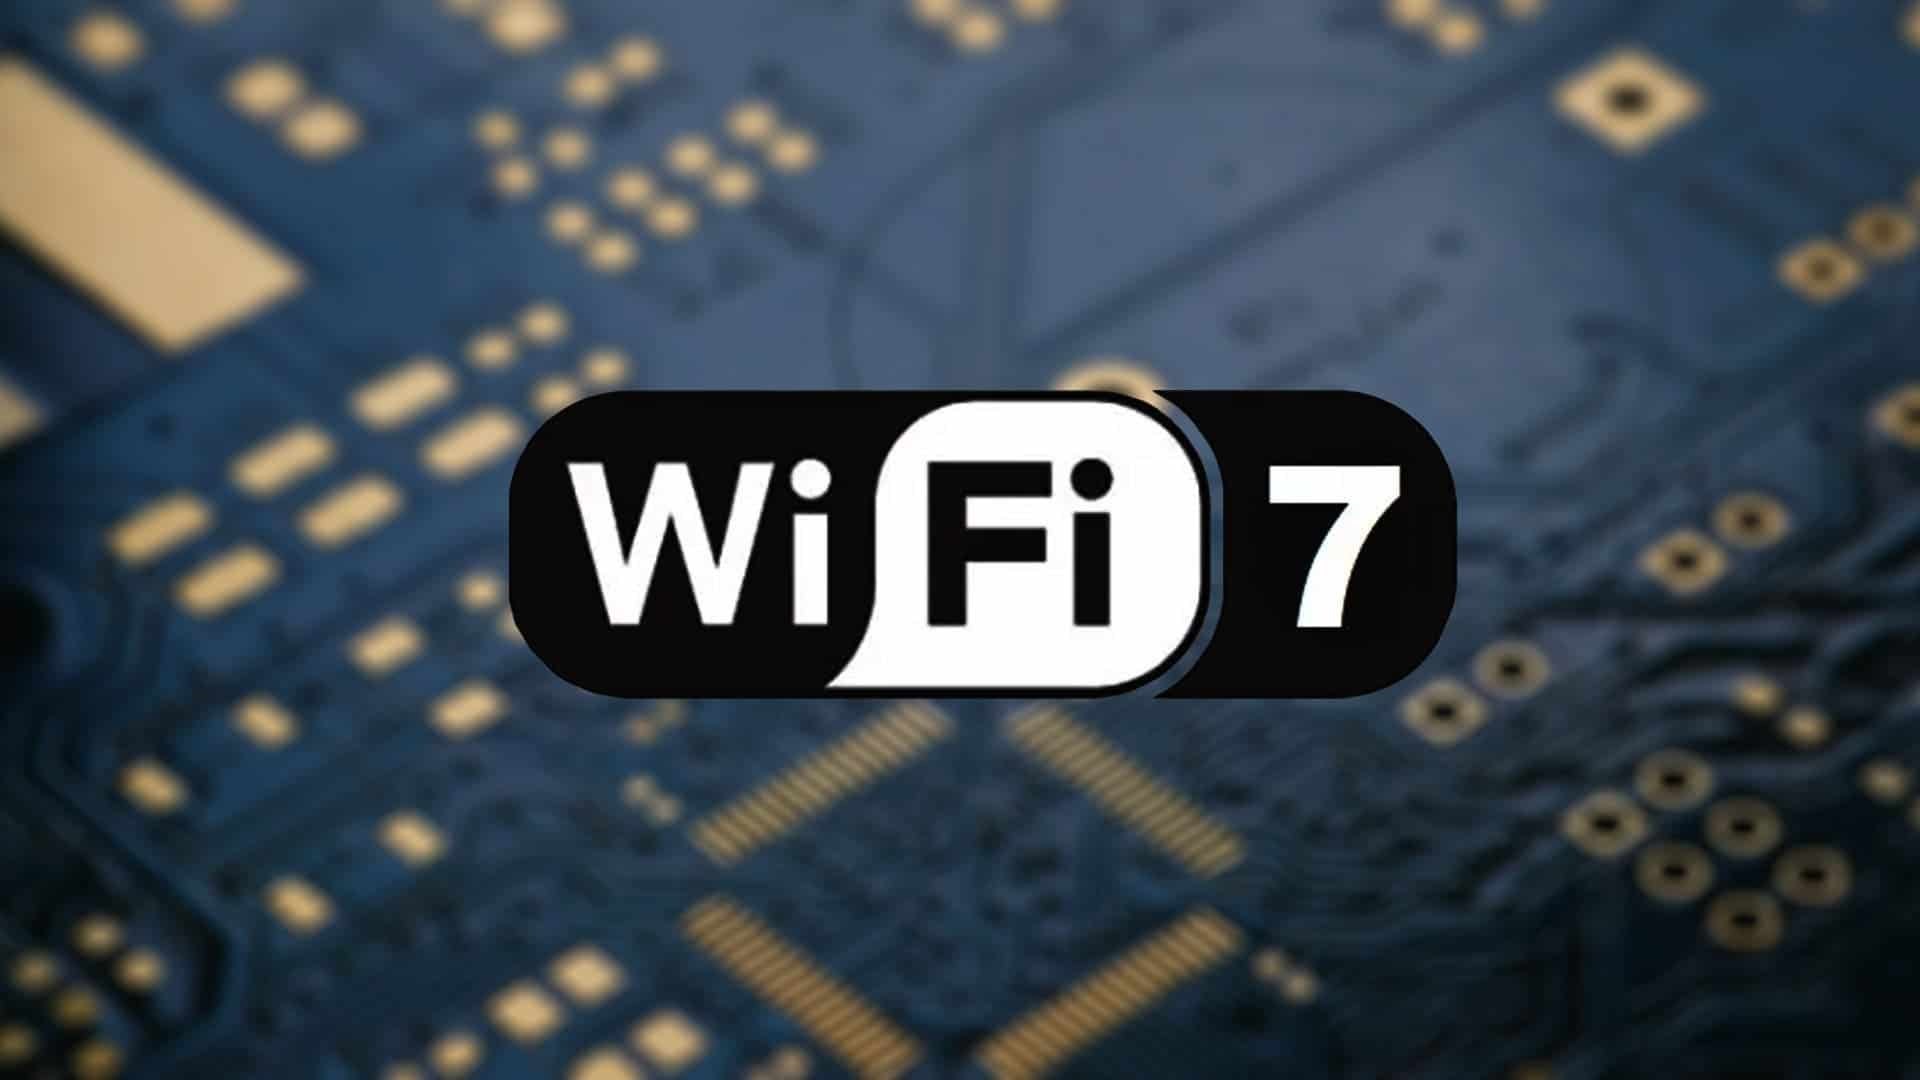 Wi-Fi 7 hakkında şimdiye kadar bildiğimiz her şey